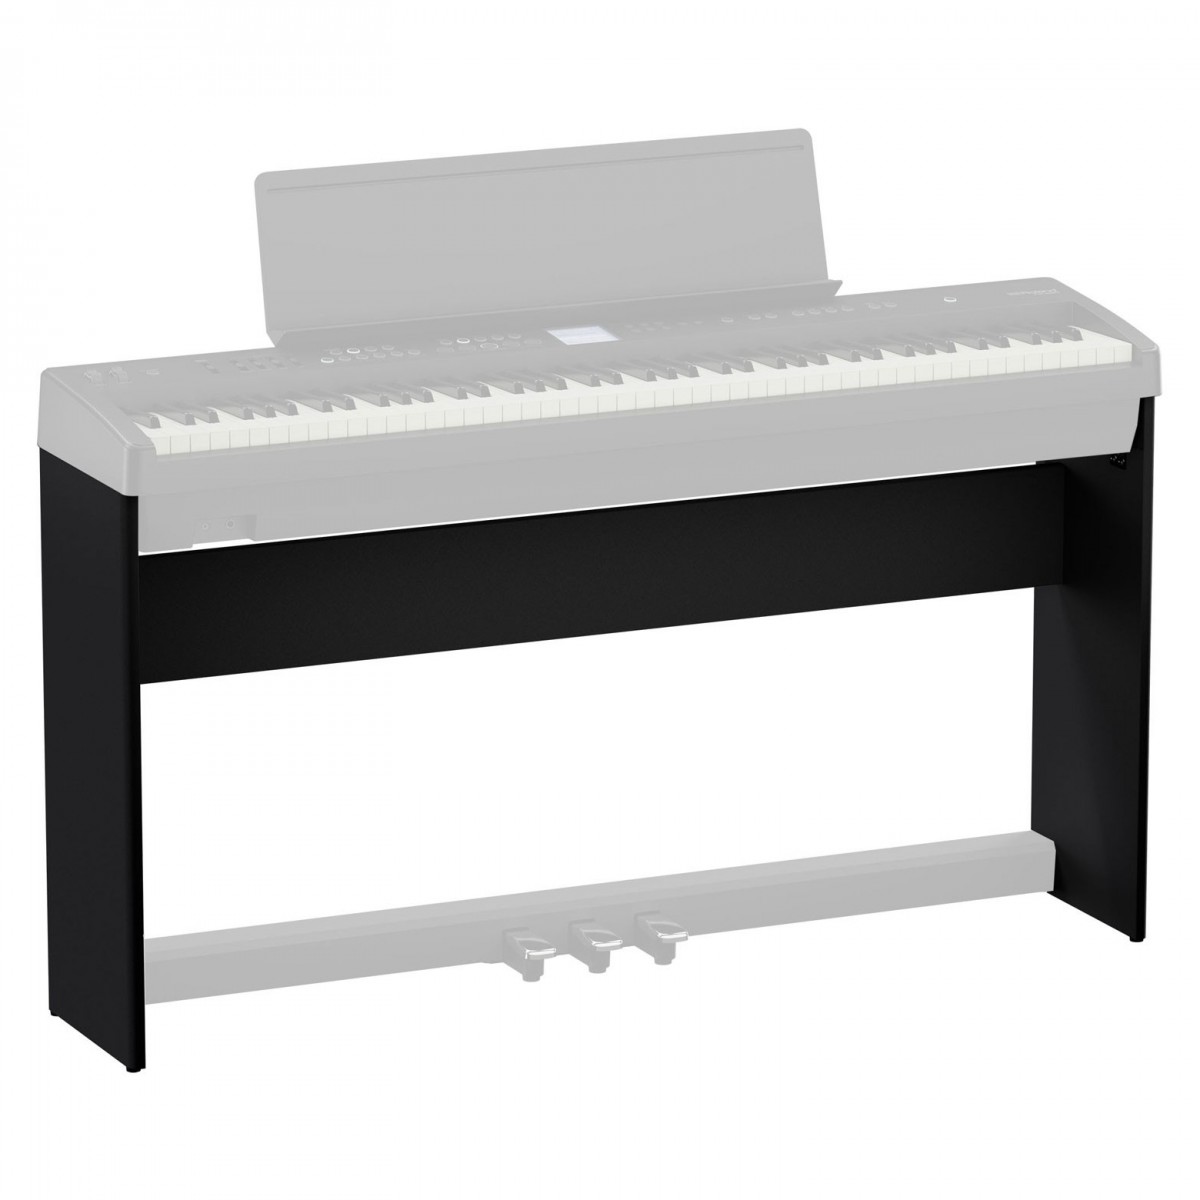 ROLAND KSFE50-BK FP-E50 İçin Piyano Standı